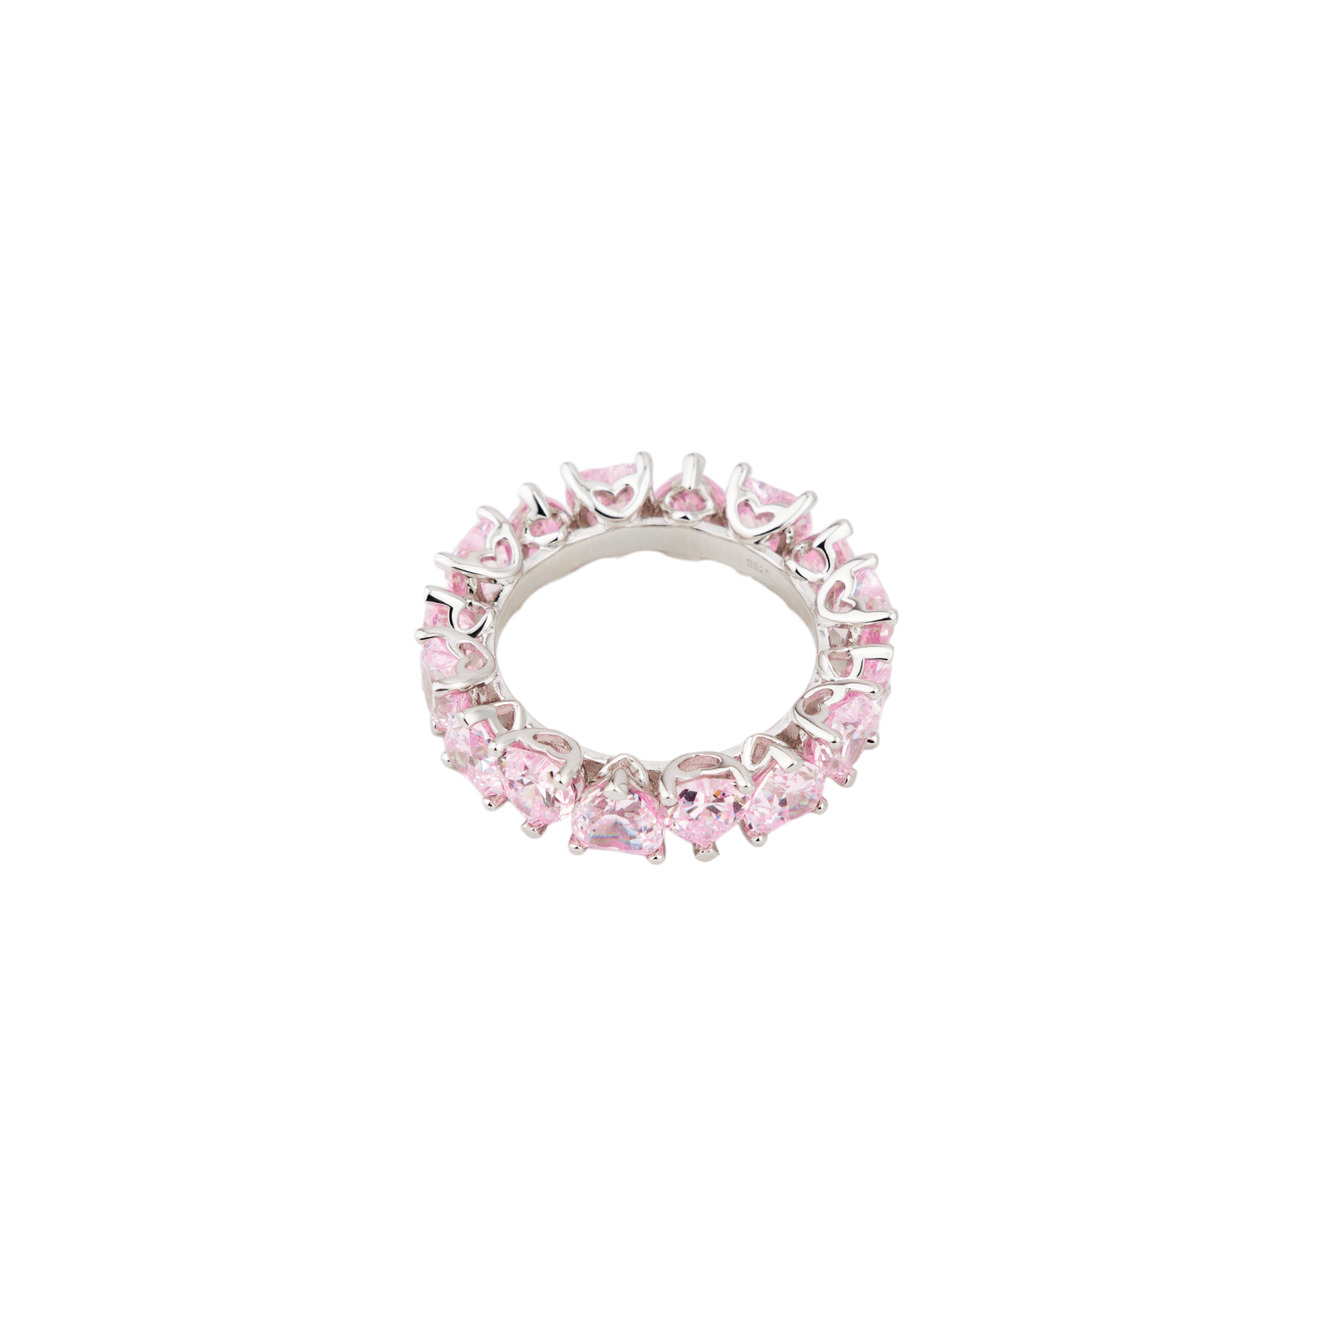 Holy Silver Тонкое кольцо из дорожки розовых кристаллов holy silver кольцо дорожка из розовых и белых кристаллов разной формы